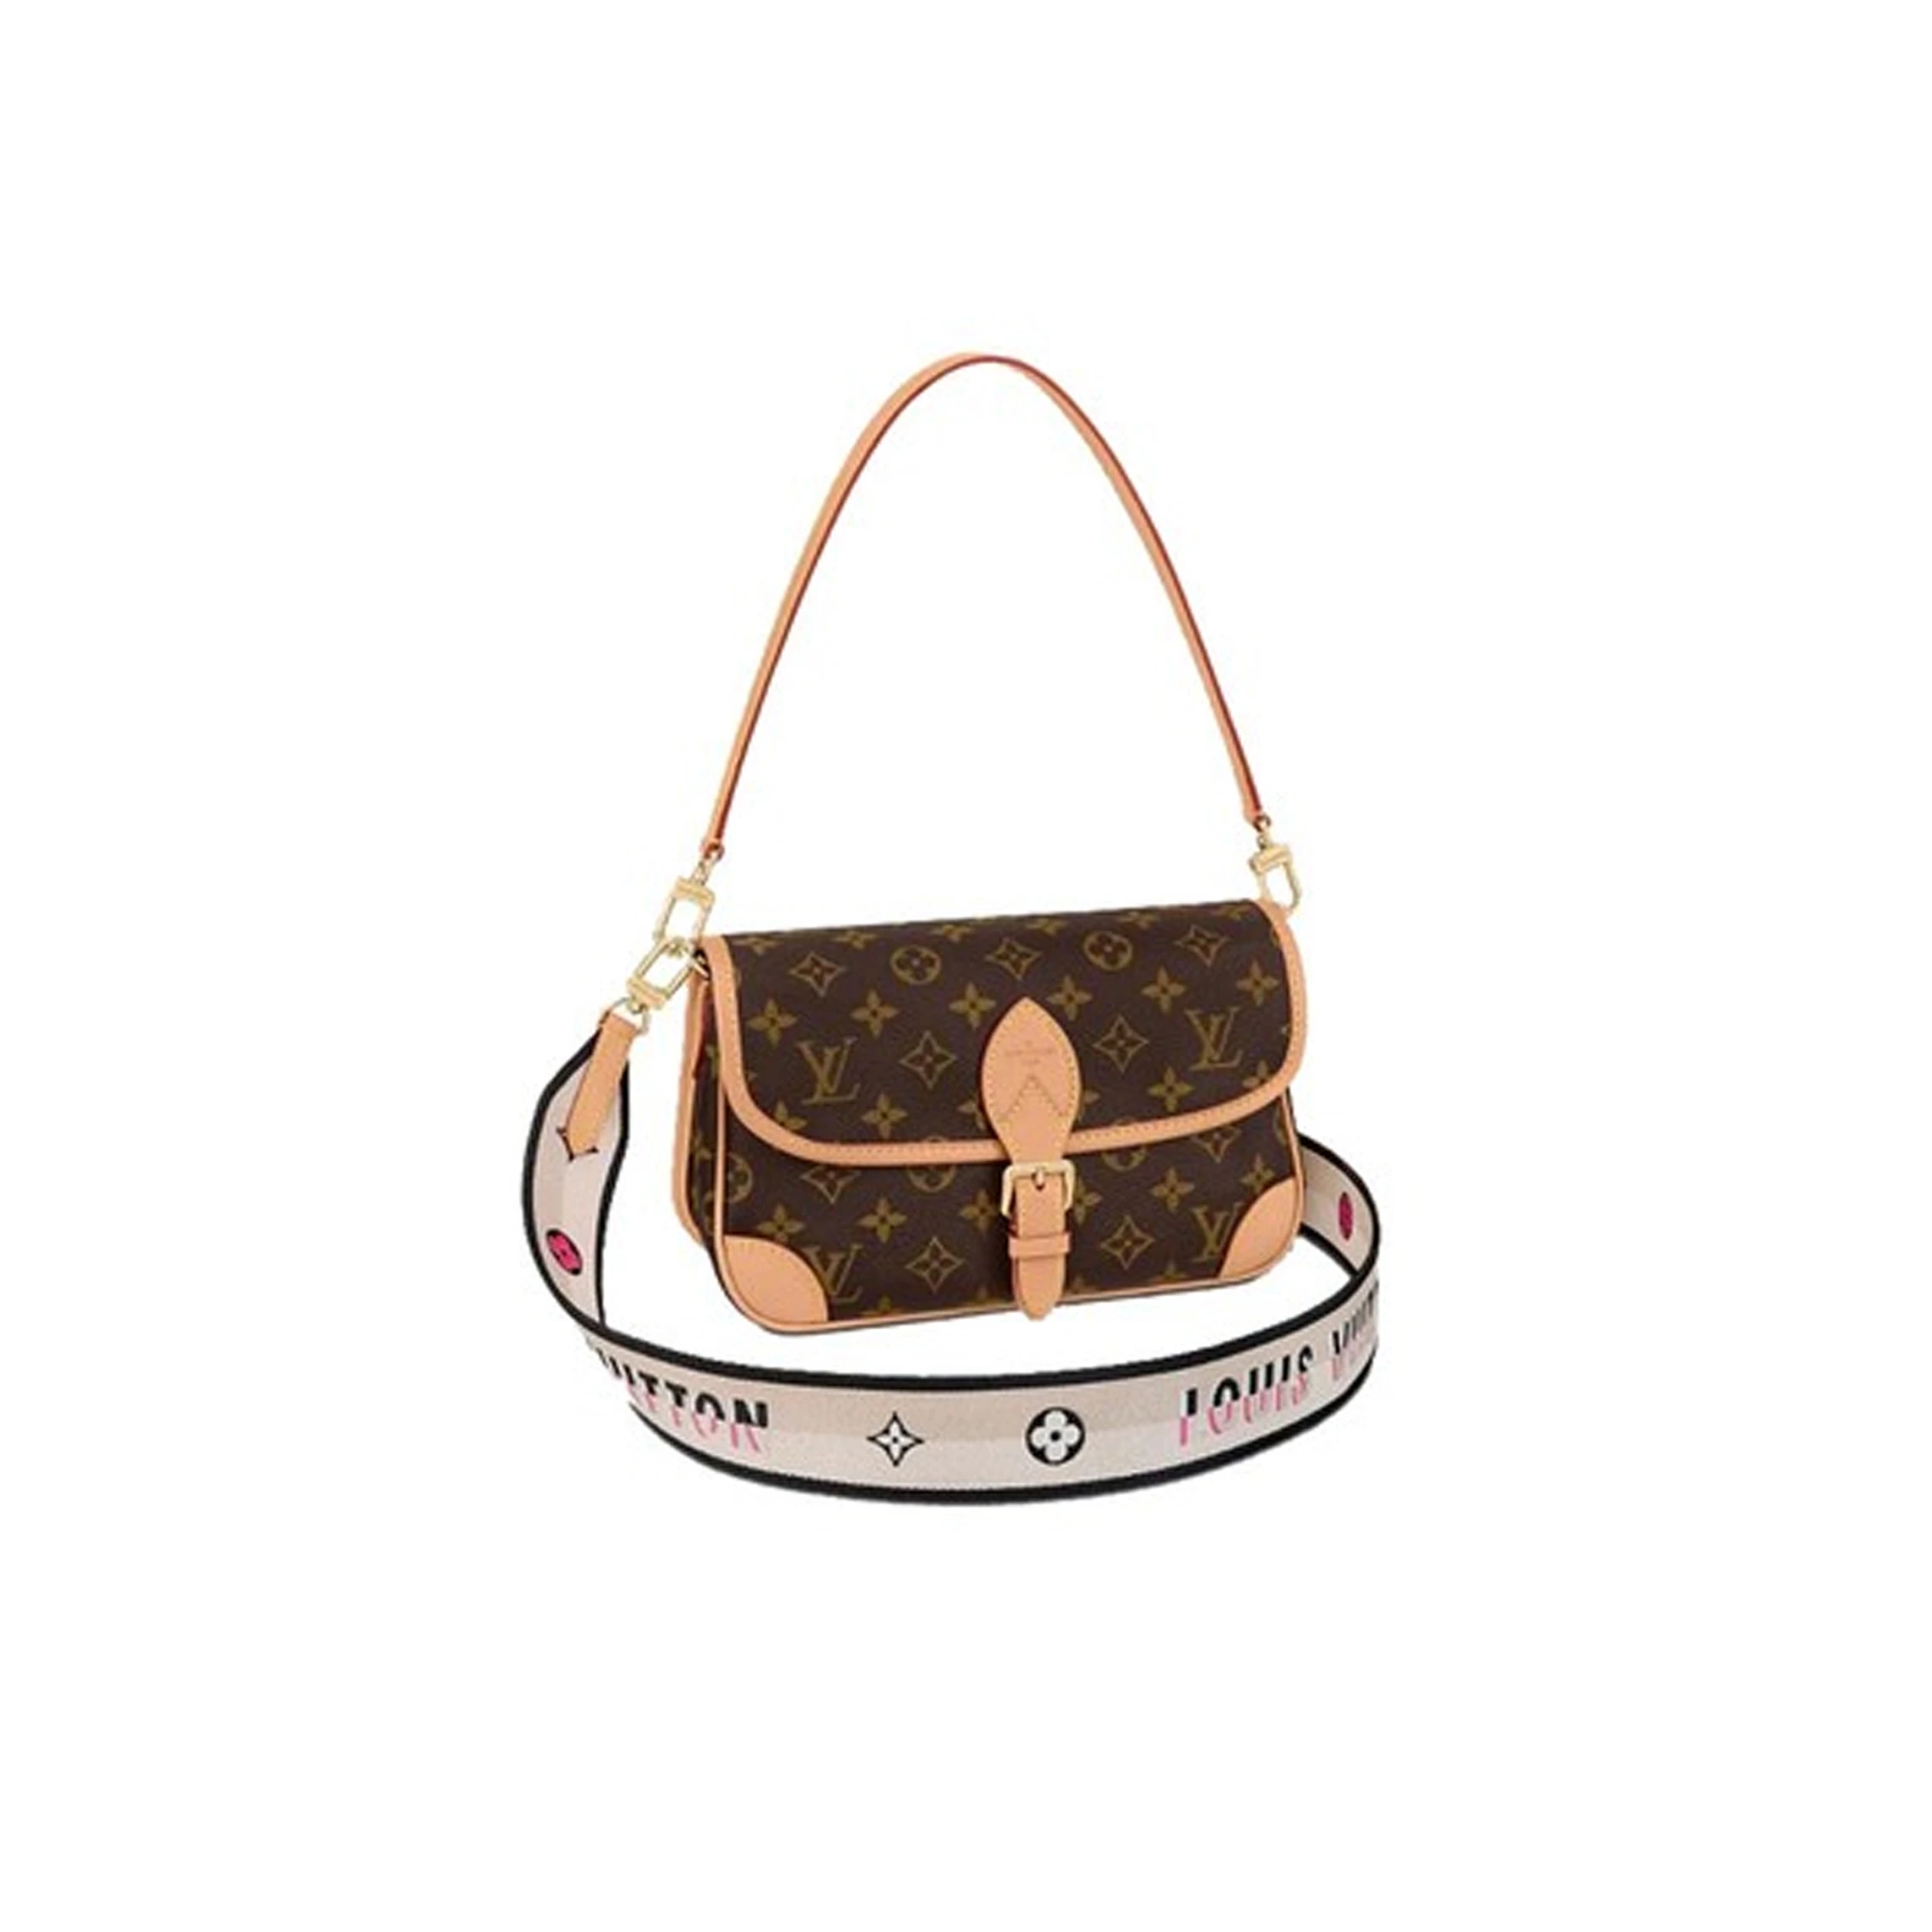 推荐Louis Vuitton/路易威登 DIANE 女士手袋单肩包双肩带 M45985 送礼好物商品